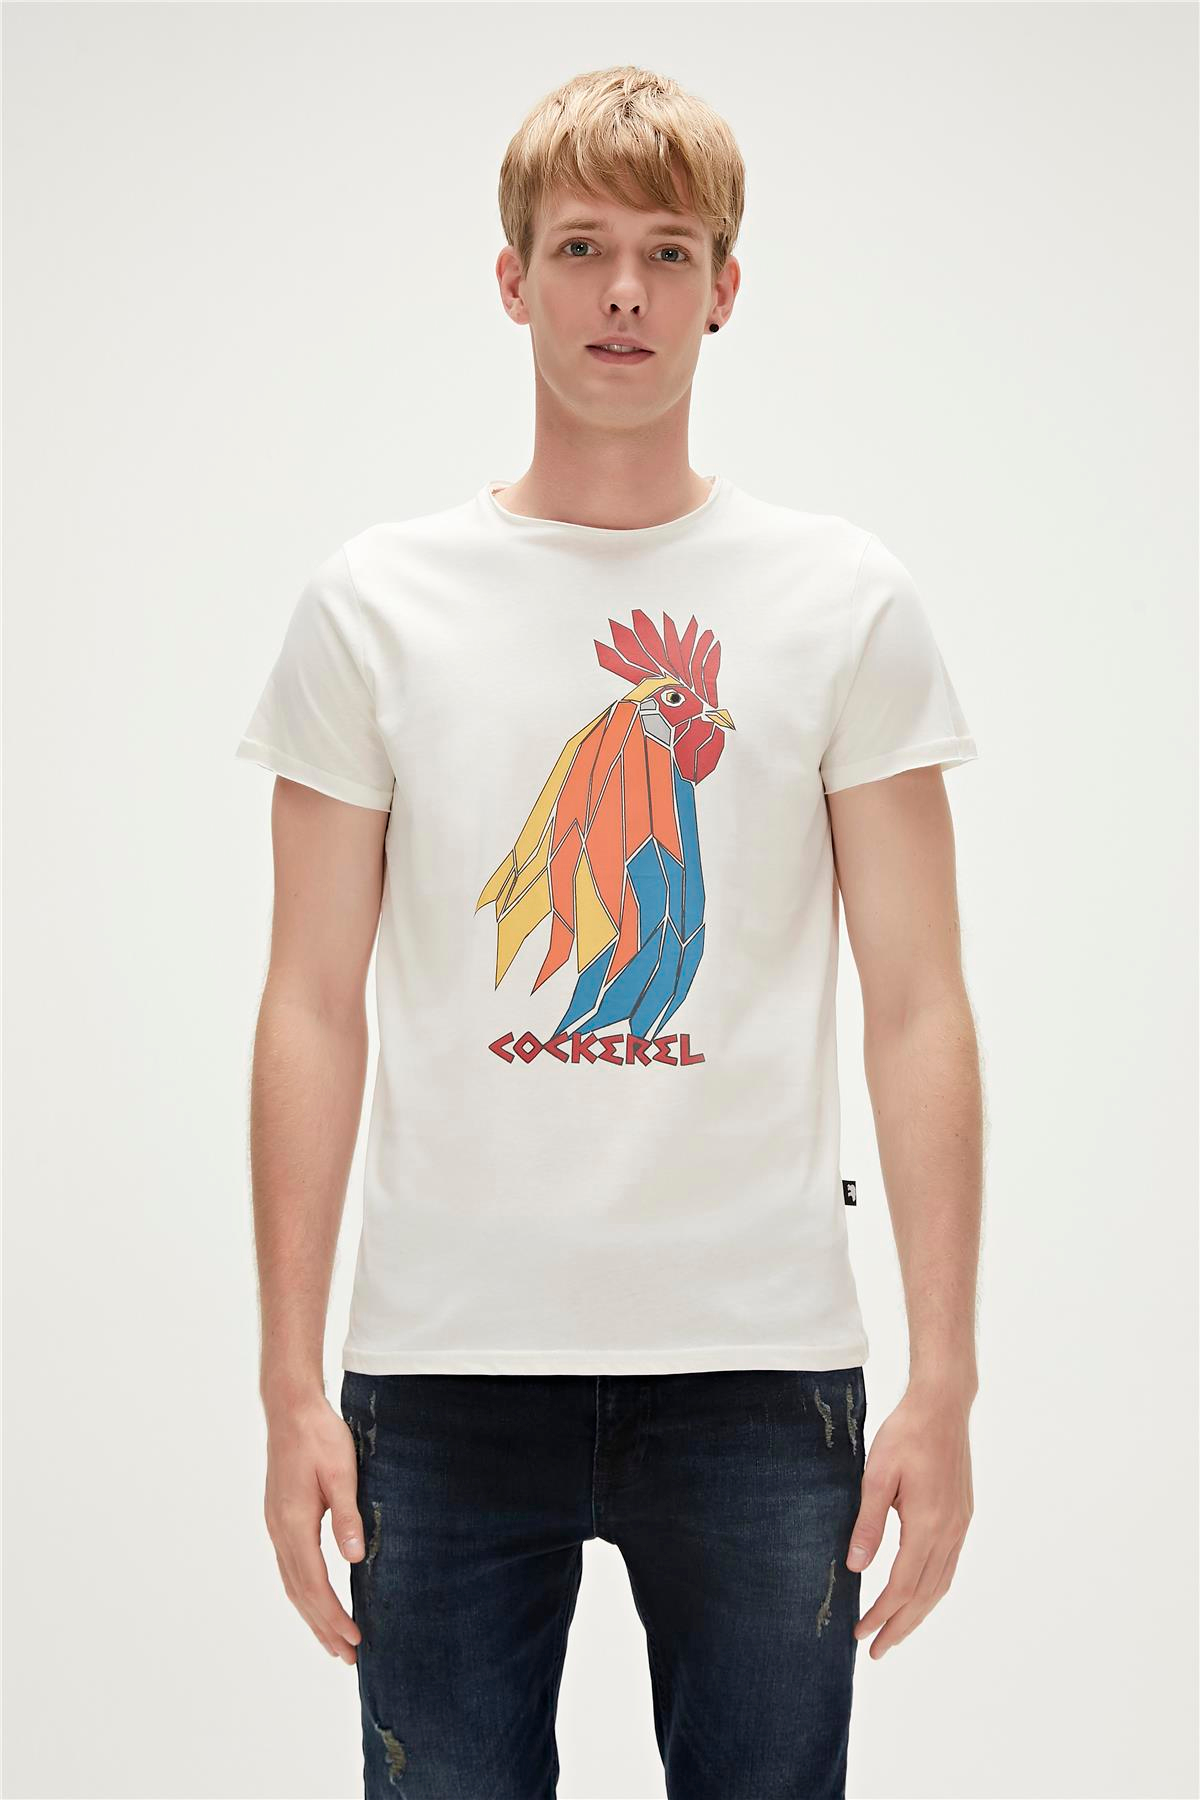 Cockerel T-Shirt Beyaz Baskılı Erkek Tişört | BAD BEAR